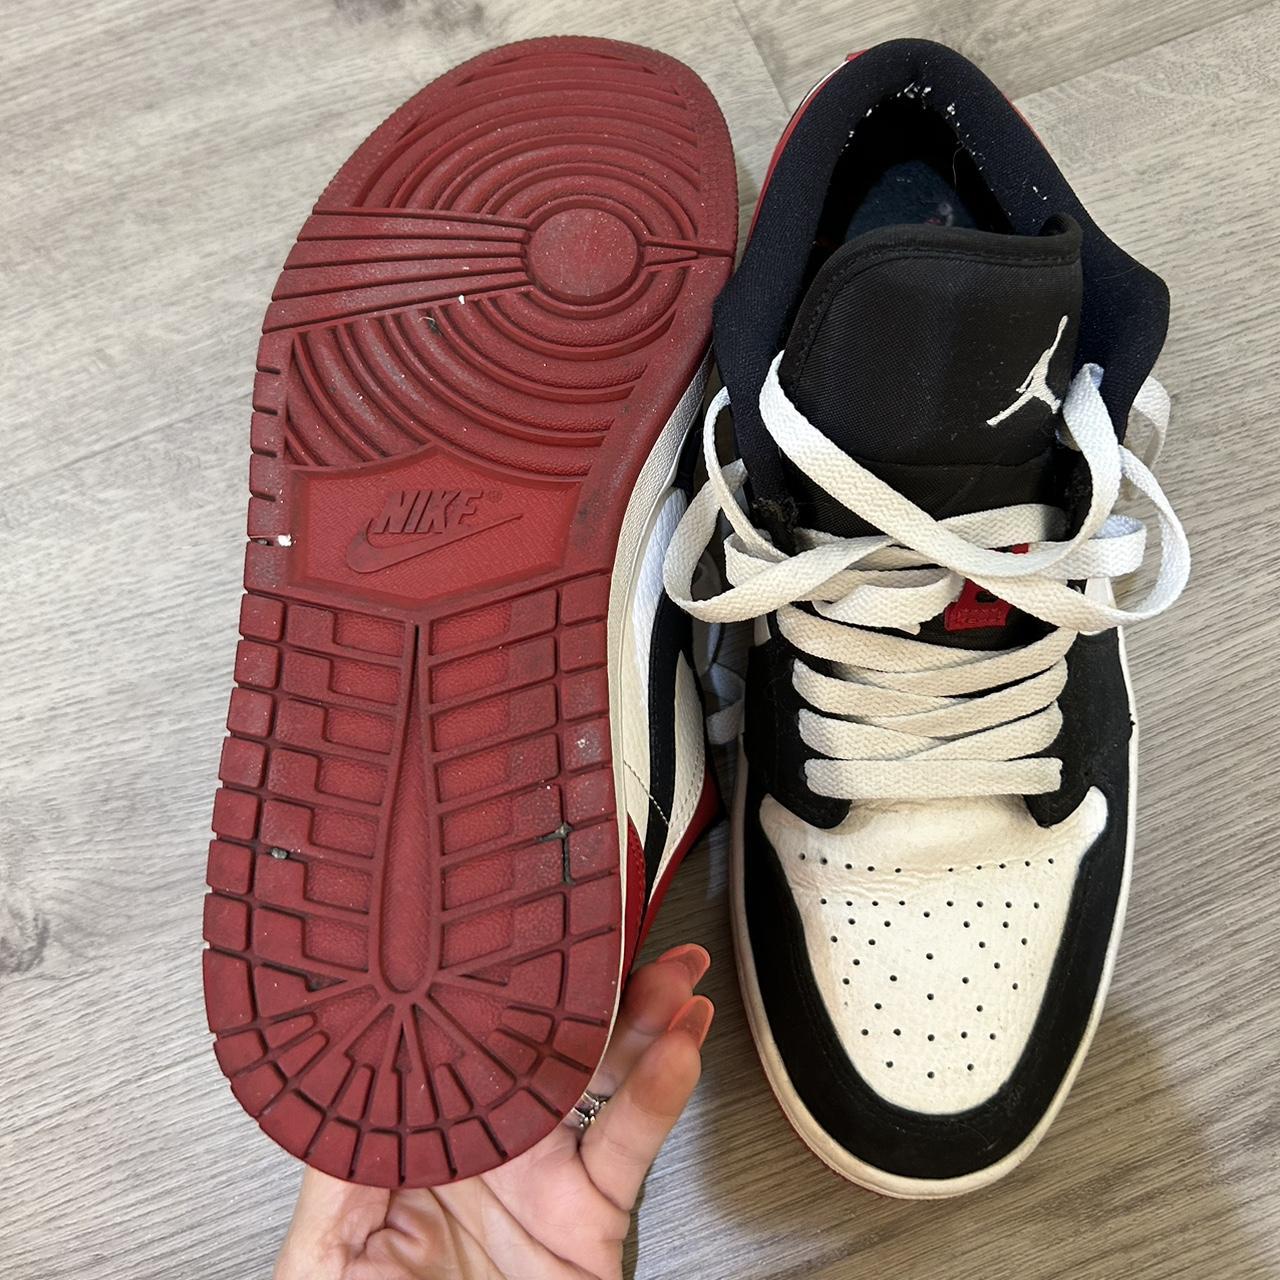 Air Jordan 1 low white/black/red gym red sneakers. ️ 🖤 - Depop